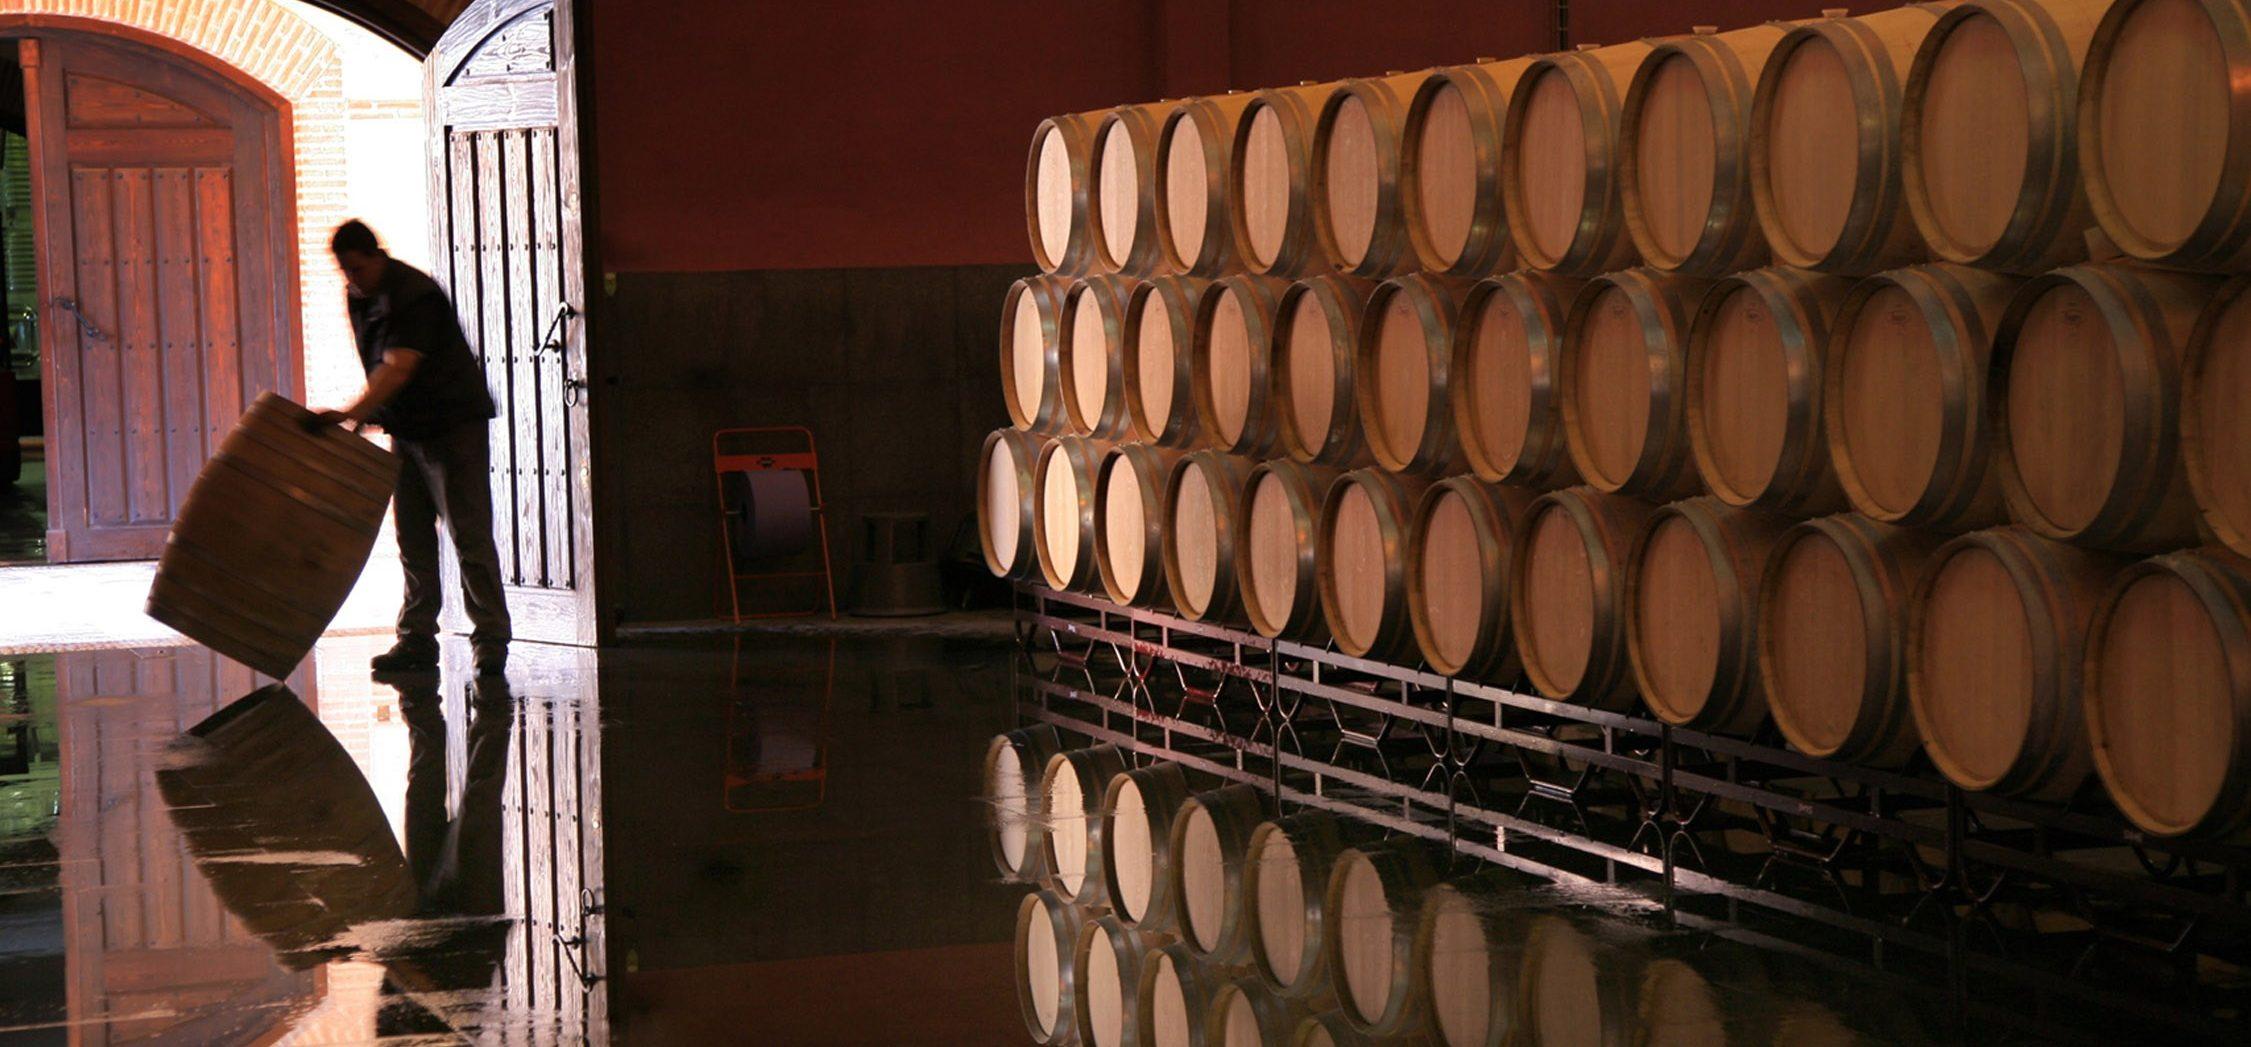 De wijnkelder van Teso la Monja